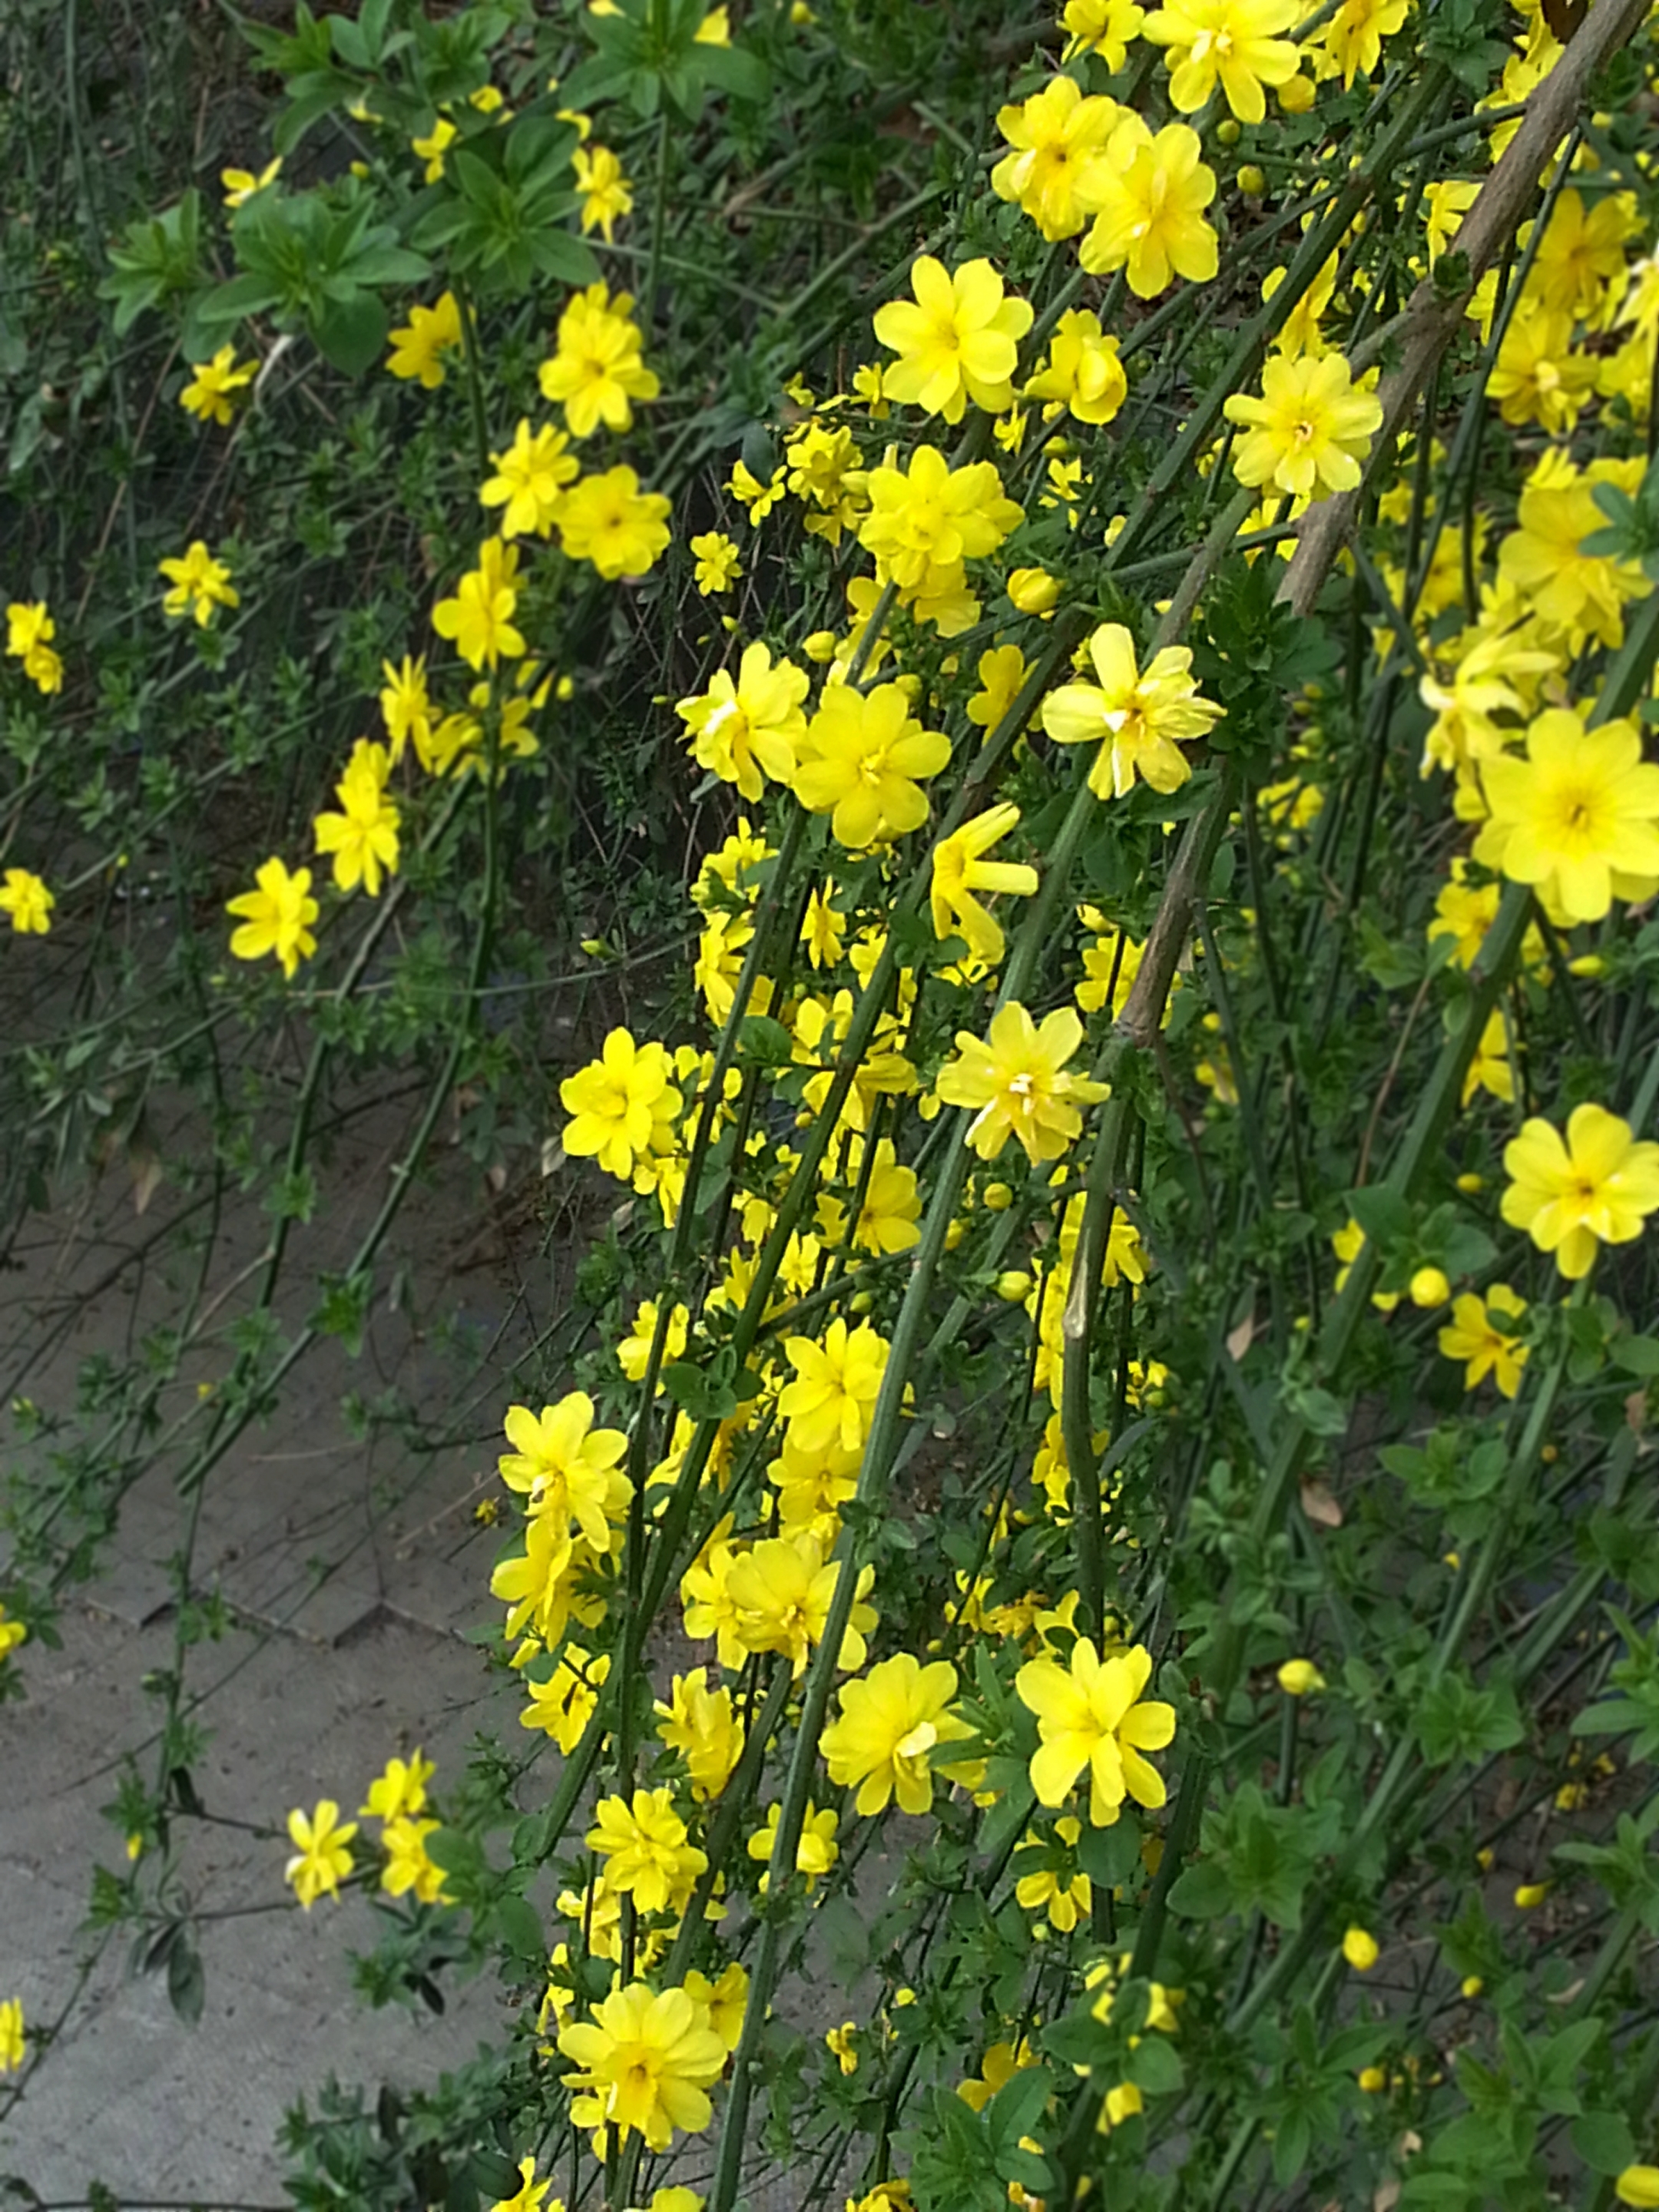 于是人们就常常将这些开黄花,枝条细长弯曲的灌木,统一称为"迎春".